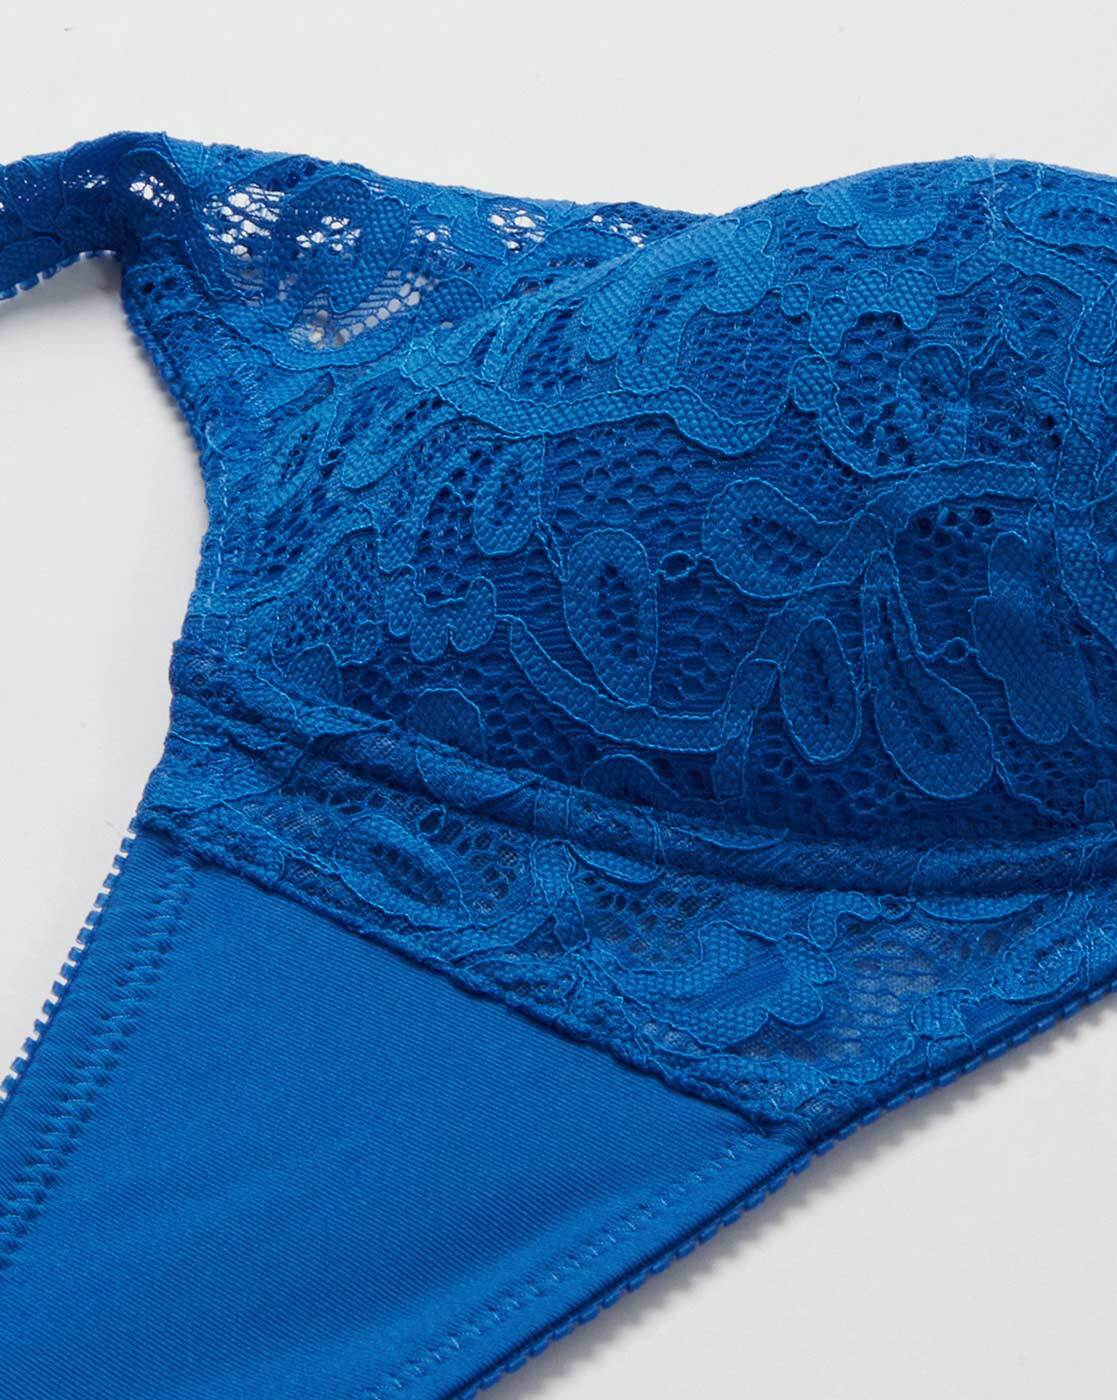 Buy Blue Bras for Women by Wacoal Online